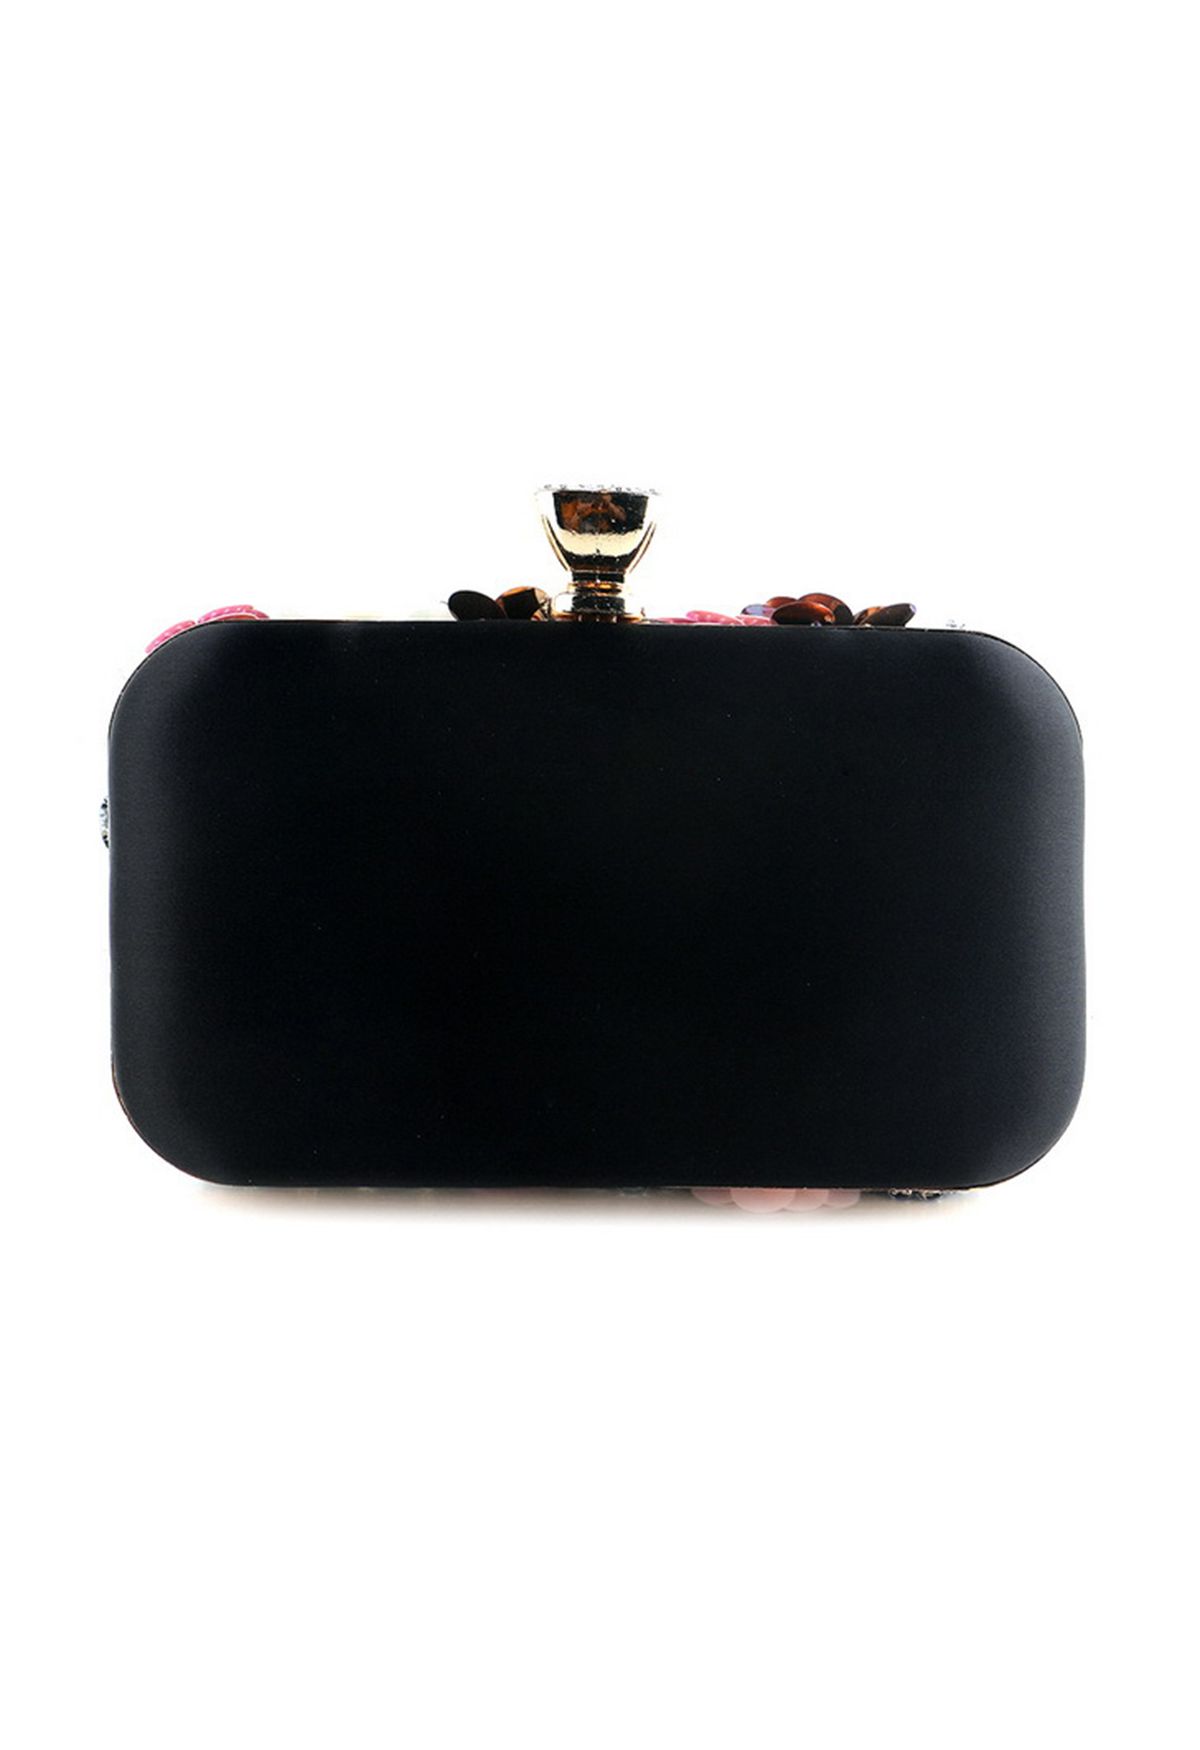 حقيبة يد صغيرة مطرزة بالخرز مصنوعة يدوياً باللون الأسود